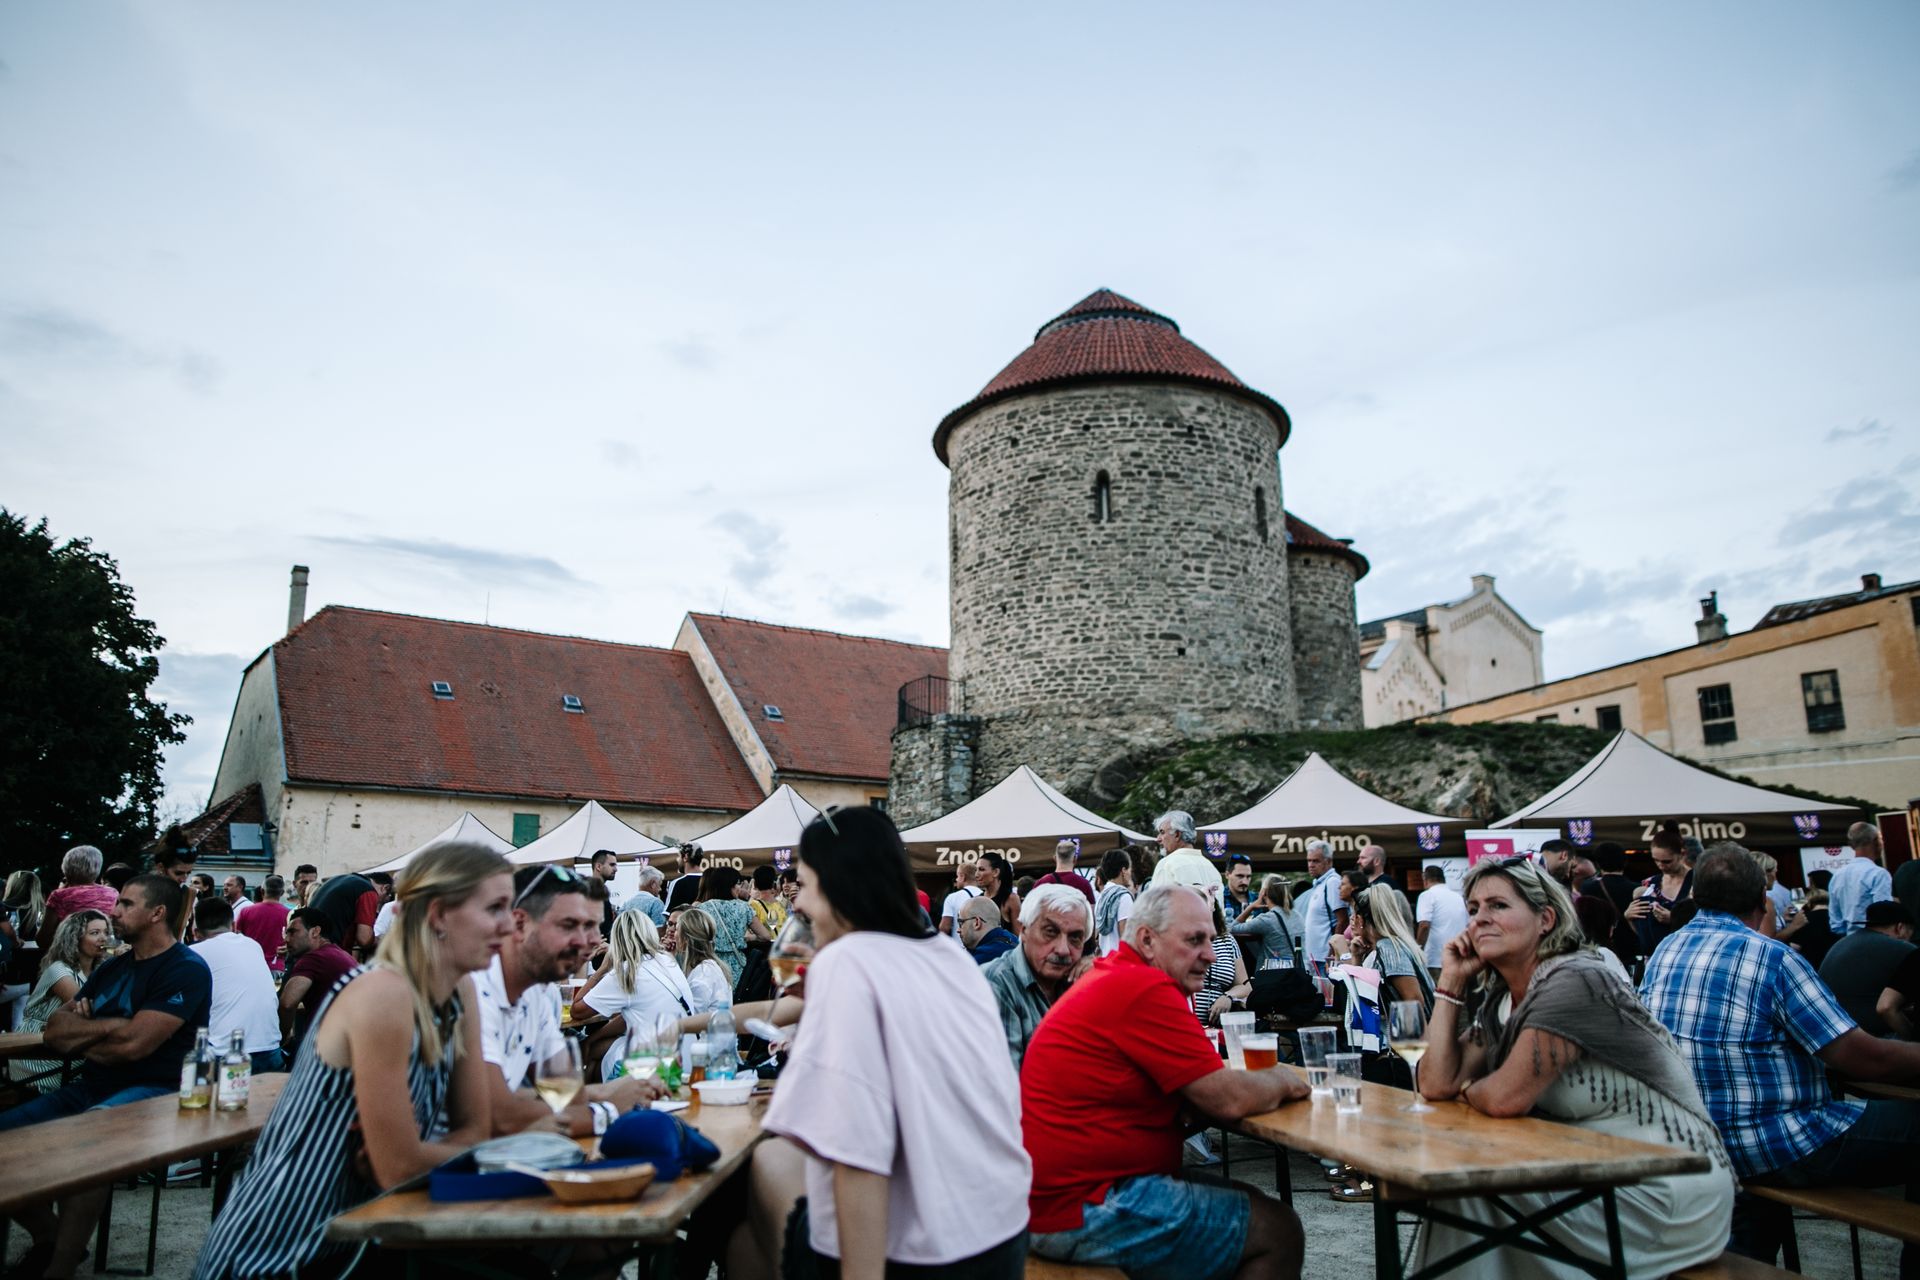 Festival vína VOC Znojmo již v sobotu 7. 5. 2022